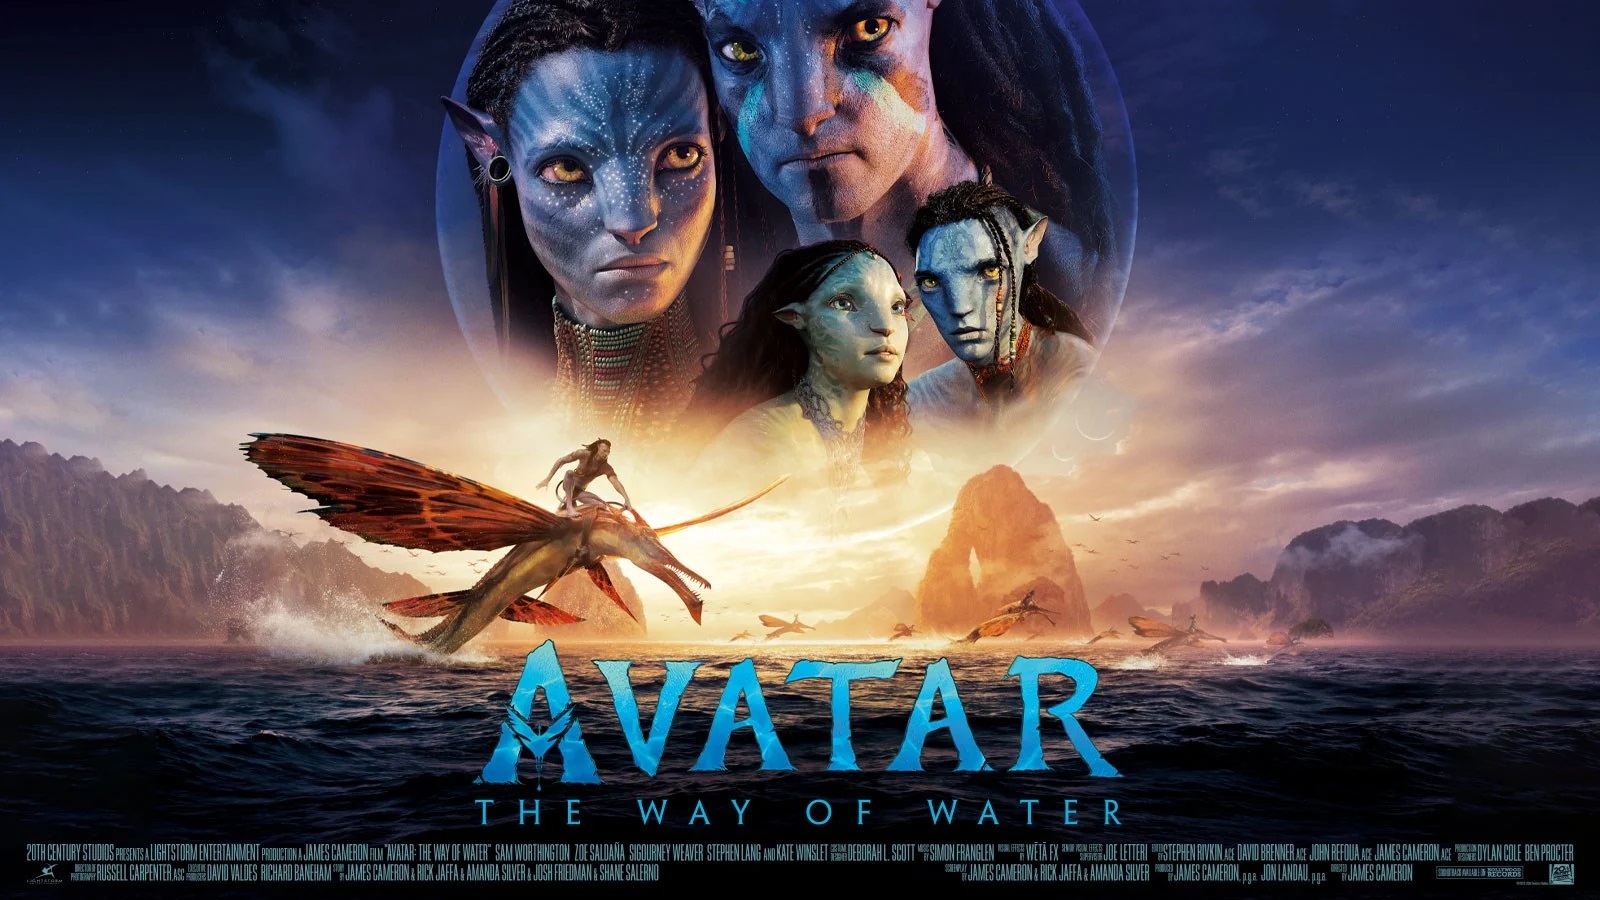 Avatar: The Way of Water vượt Titanic, giành vị trí phim doanh thu cao thứ 3 mọi thời đại